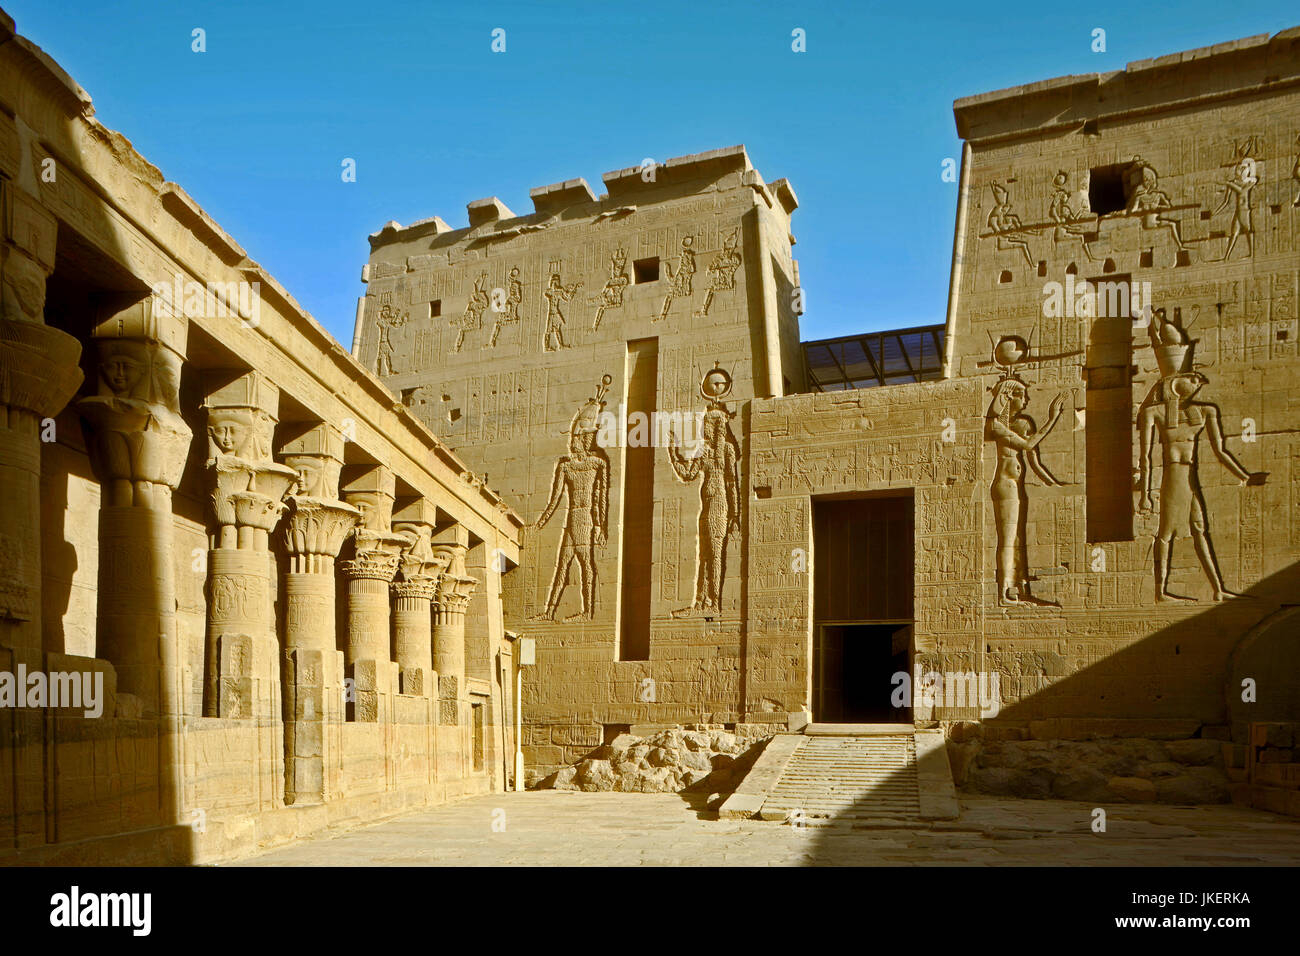 Ägypten, Assuan, rekonstruierter Isis-Tempel auf der Nil-Insel Philae, zweiter Pylon des Isis-Tempels mit Opferszenen des Königs vor Gottheiten, links Stock Photo